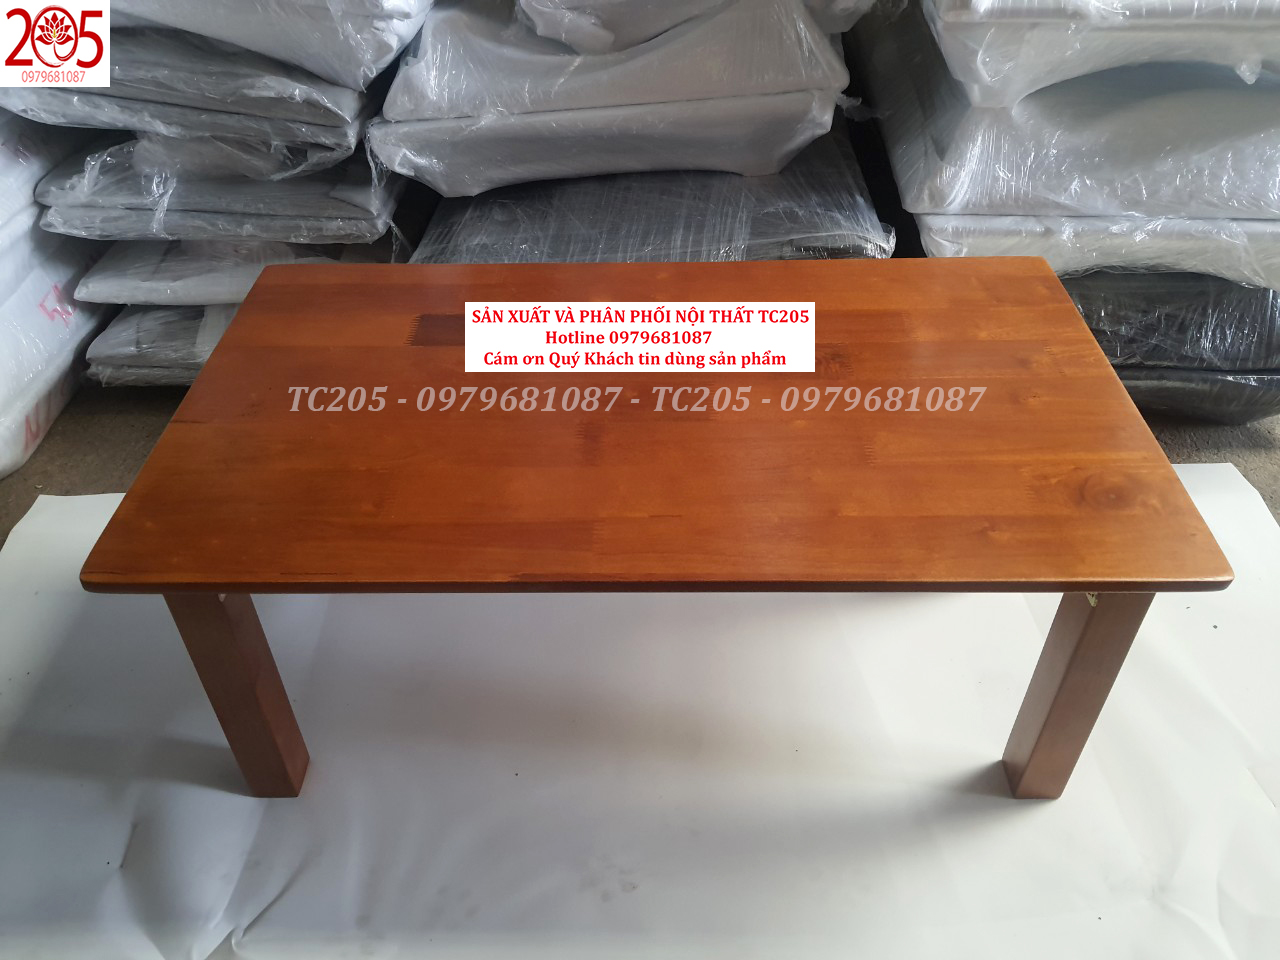 BÀN XẾP CHÂN VUÔNG GỖ CAO SU 70x40x30cm VÀNG - 205TC Folding wooden table